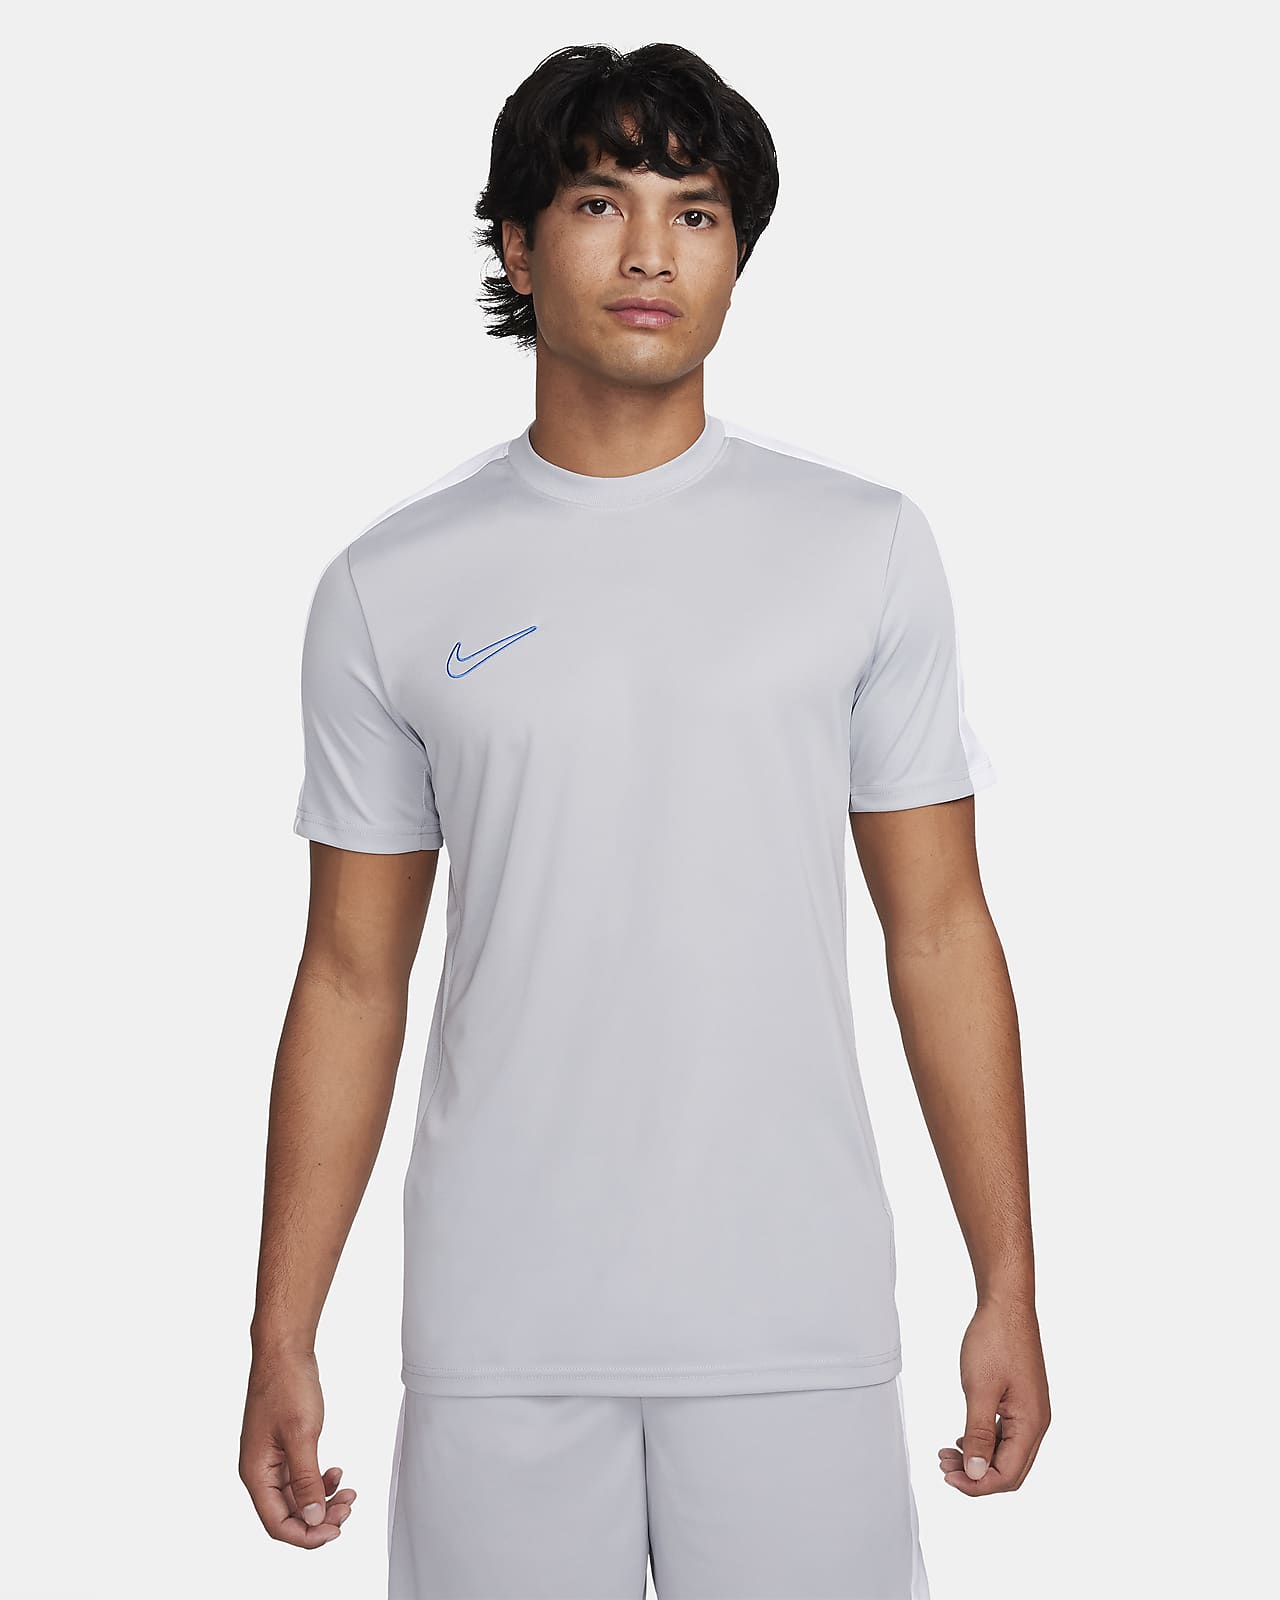 Ανδρική κοντομάνικη ποδοσφαιρική μπλούζα Dri-FIT Nike Academy